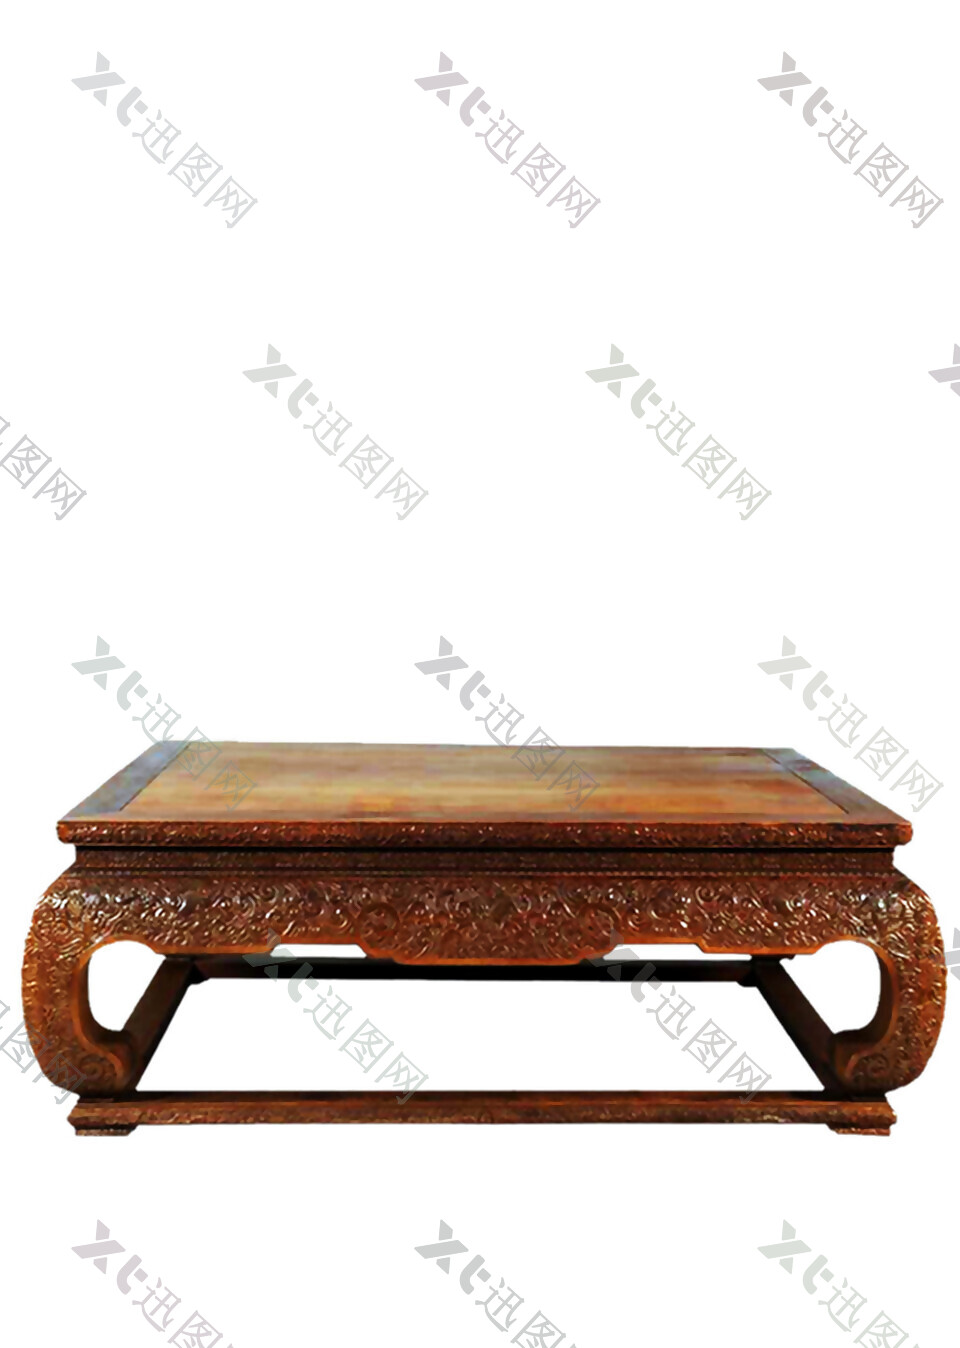 古代实木方桌实物元素